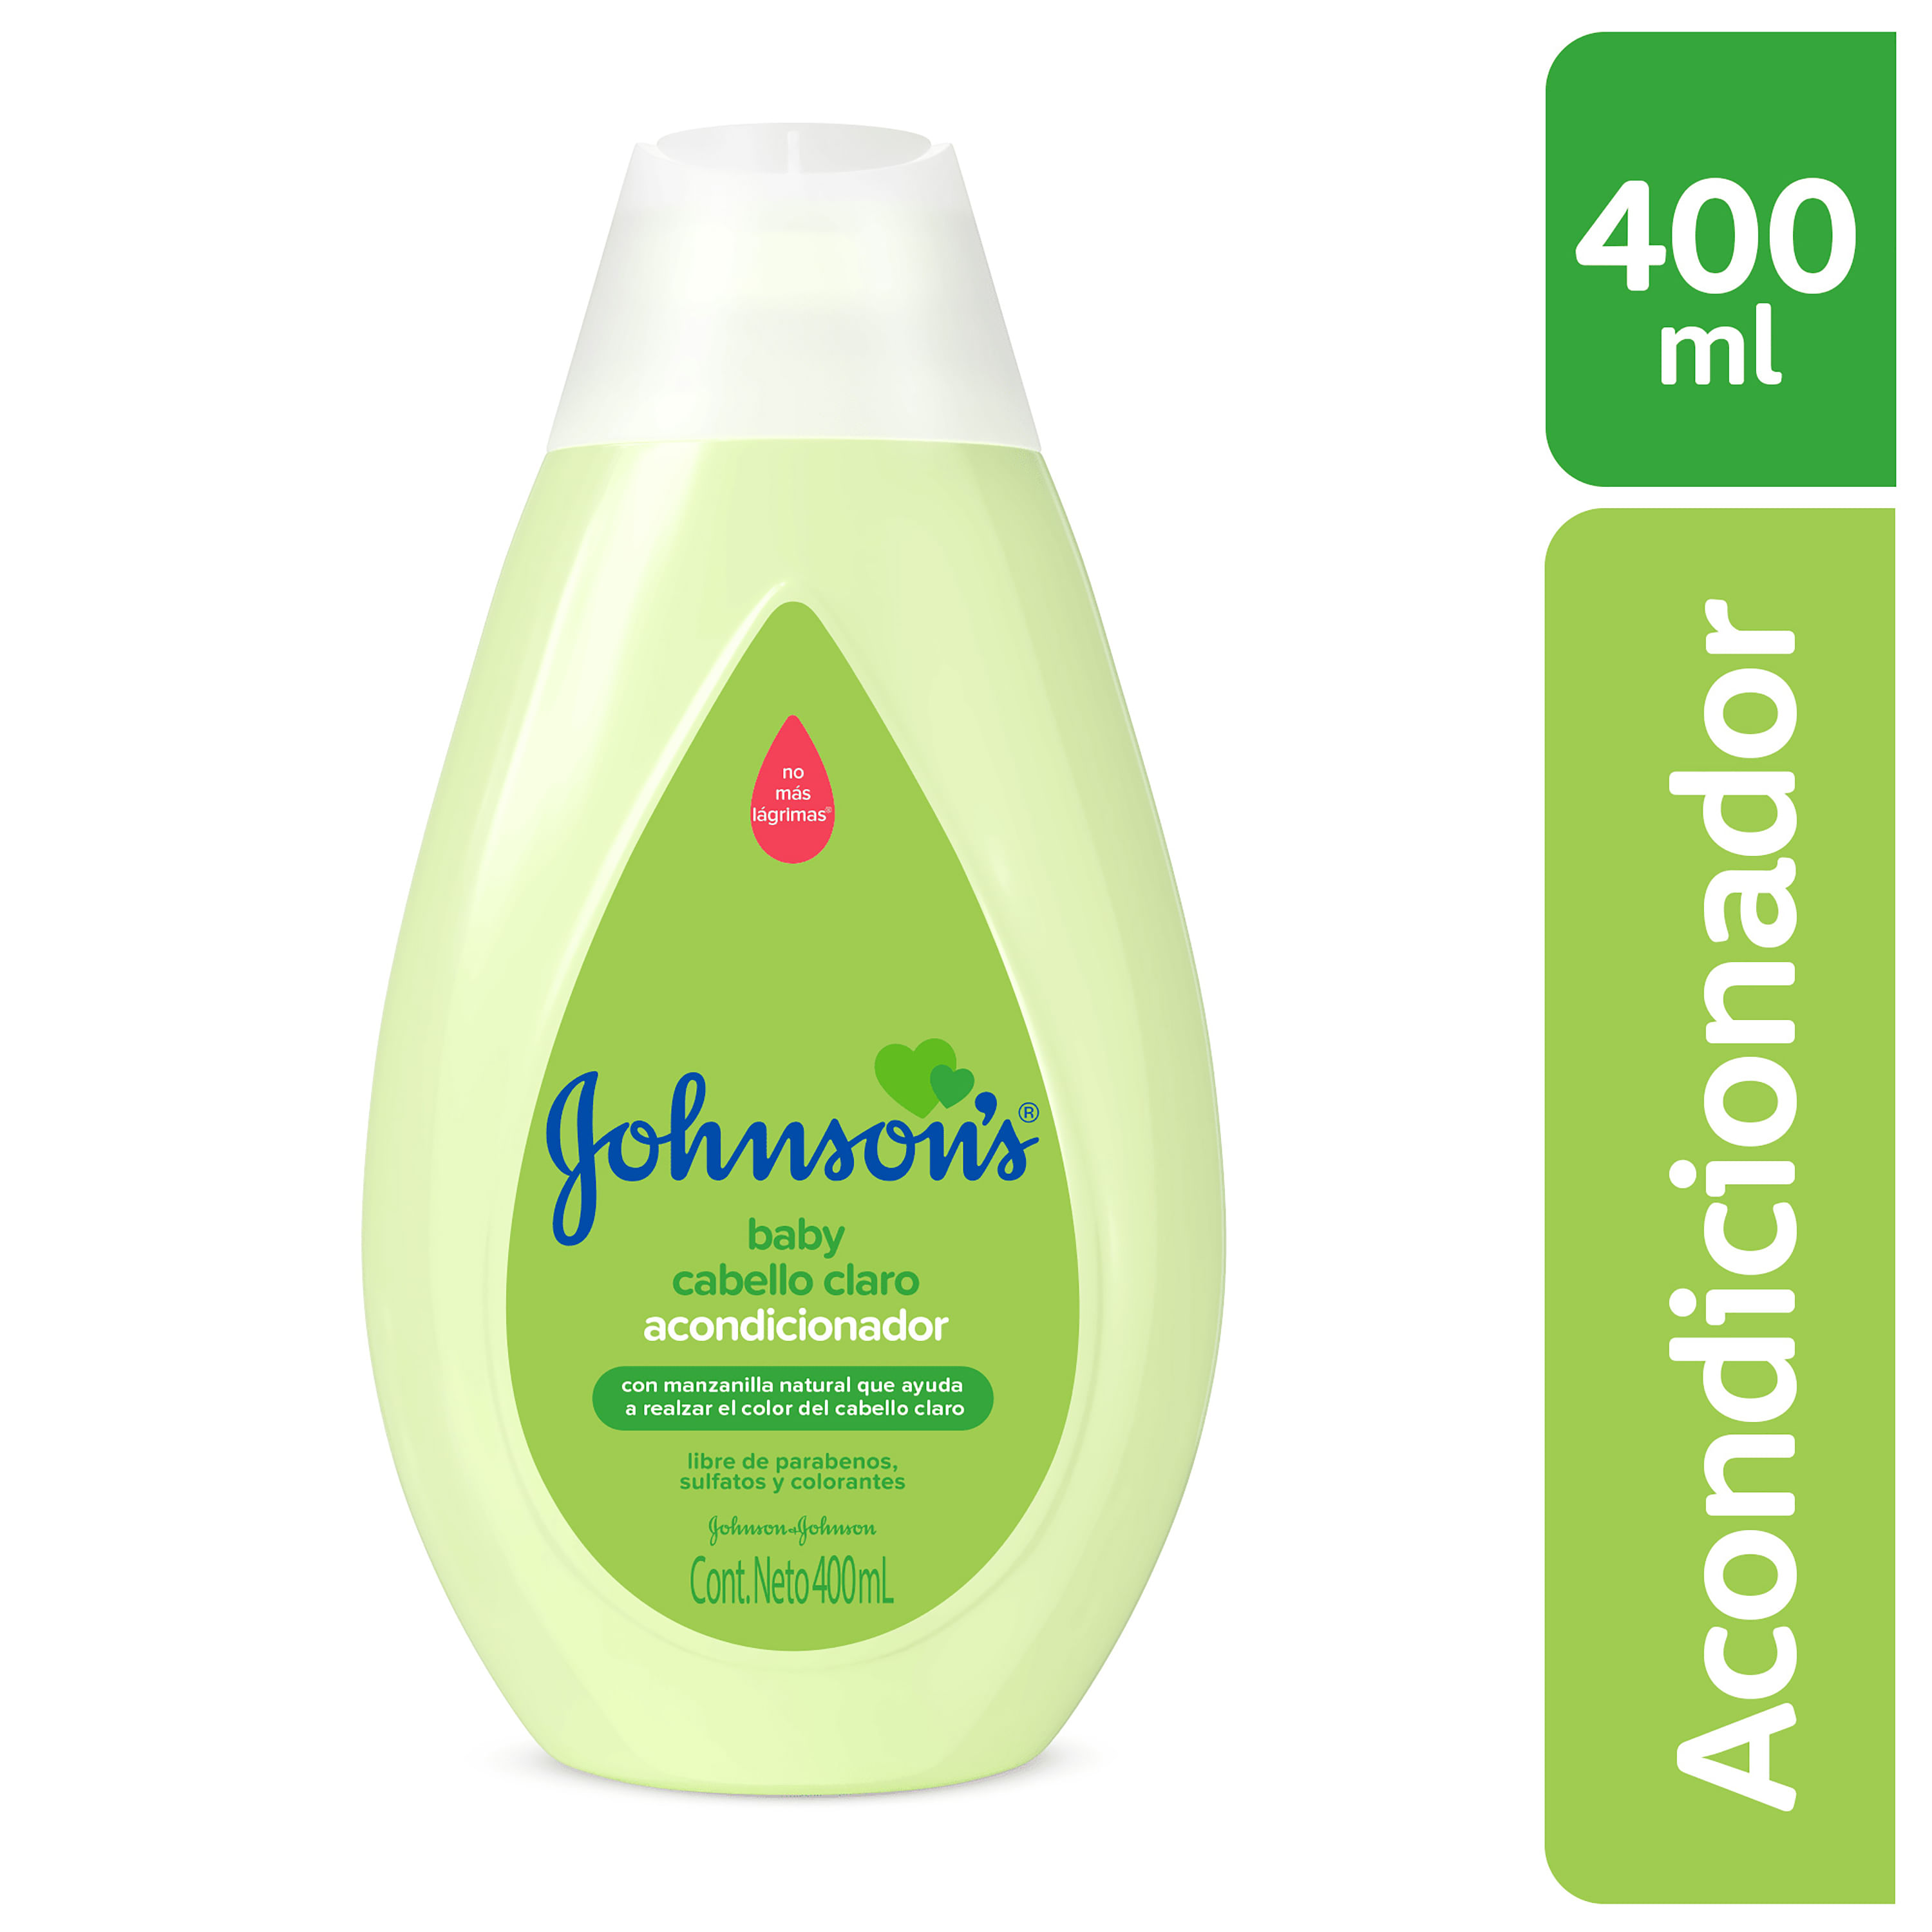 Acondicionador Johnsons Baby Original 400ml - Farmacias Vilela